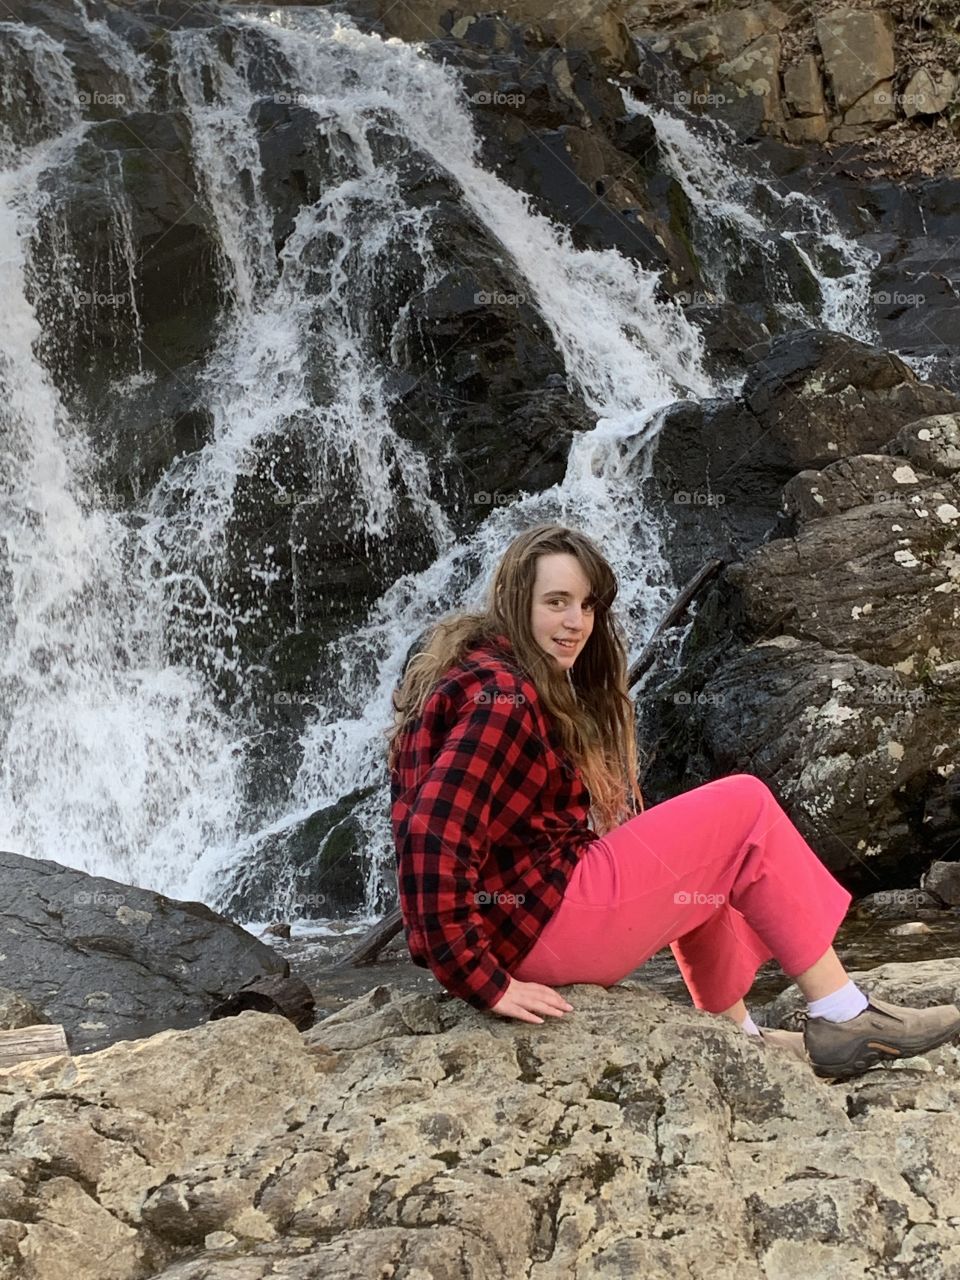 Waterfall, girl